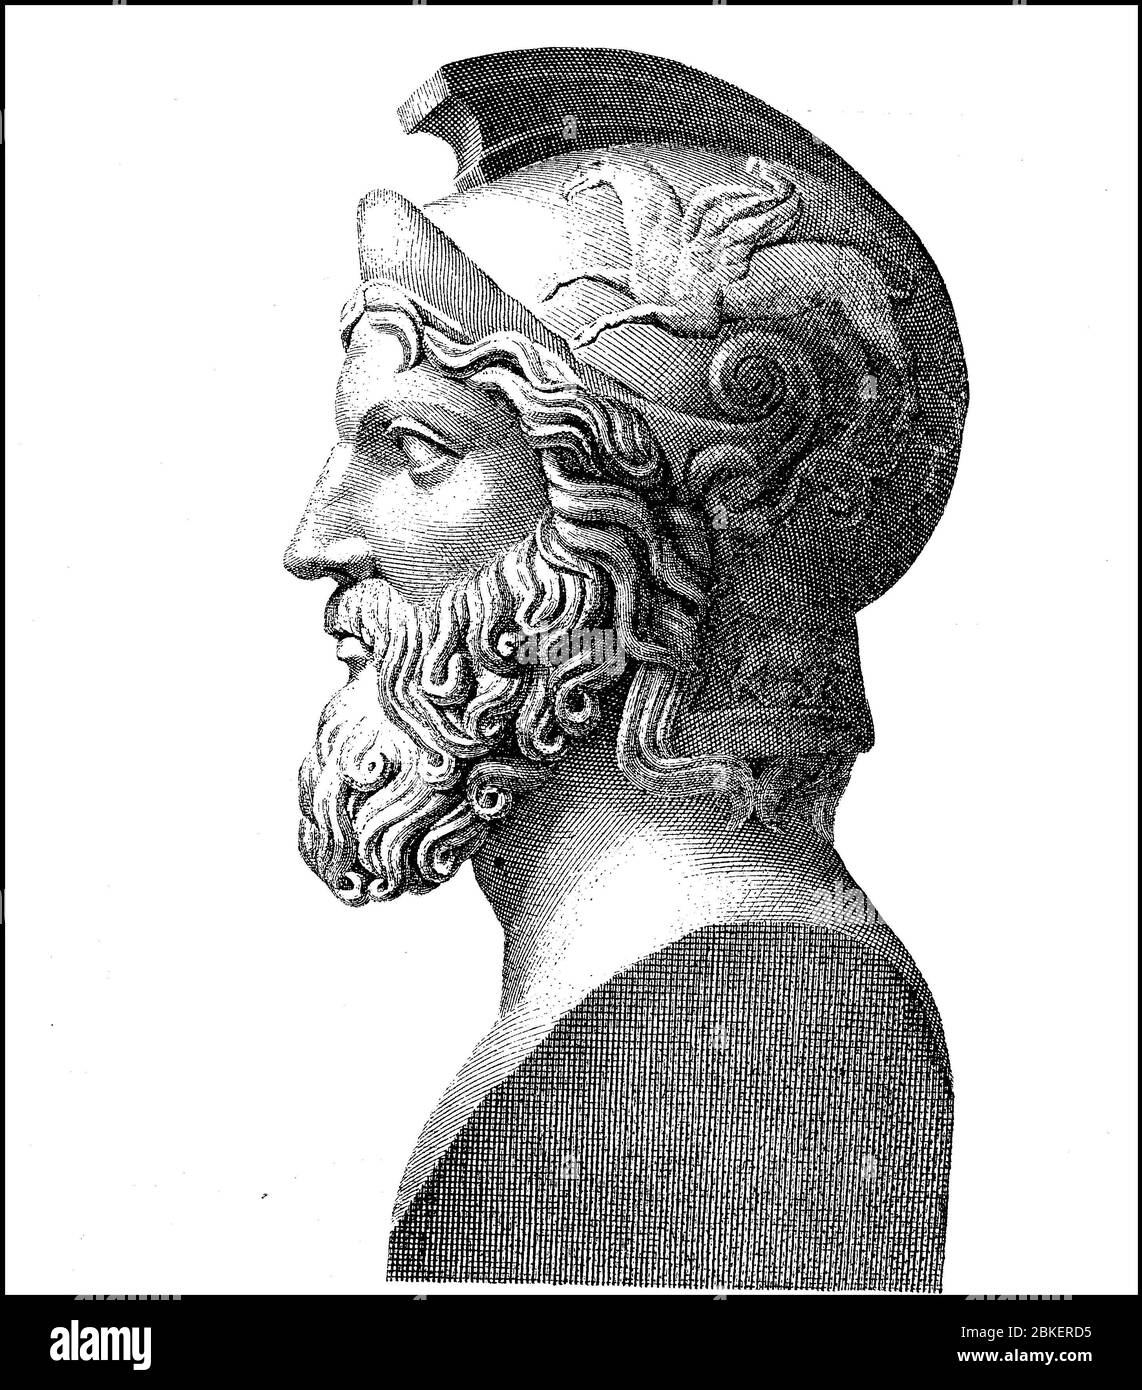 Miltiades, V bis 550 v. Chr. - V bis 489. Chr., Sohn von Kimon, war ein gebürtiger Athener General und Politiker der Familie von Philaiden, bekannt durch Herodot, der ihn erklärte, der Sieger in der Schlacht von Marathon / Miltiades, um 550 v. Chr. - um 489 v. Chr., Sohn des Kimon, war ein aus Athen stammender Feldherr und Politiker aus der Familie der Philaiden, bekannt durch Herodot, der ihn zum Sieger in der Schlacht bei Marathon erklärt, historisch, historisch, digital verbesserte Reproduktion eines Originals aus dem 19. Jahrhundert / digitale Reproduktion einer Originalvorlage aus dem 19. Jahrhundert, Stockfoto